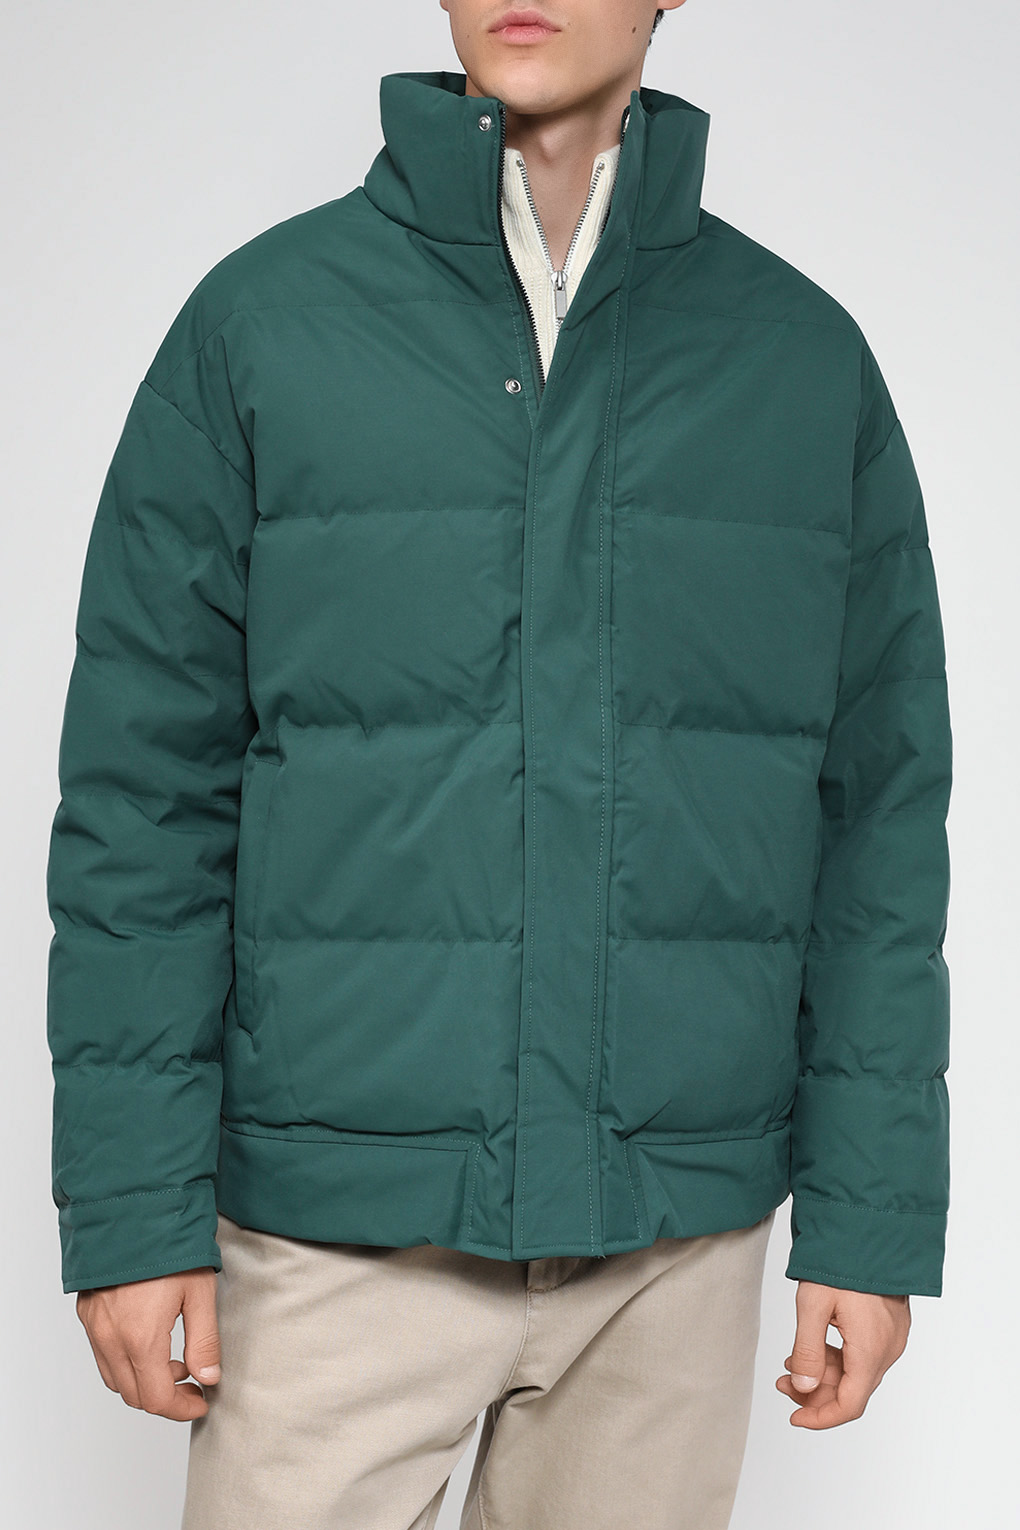 Куртка мужская D.Molina DM23079285-042 зеленая 50 RU